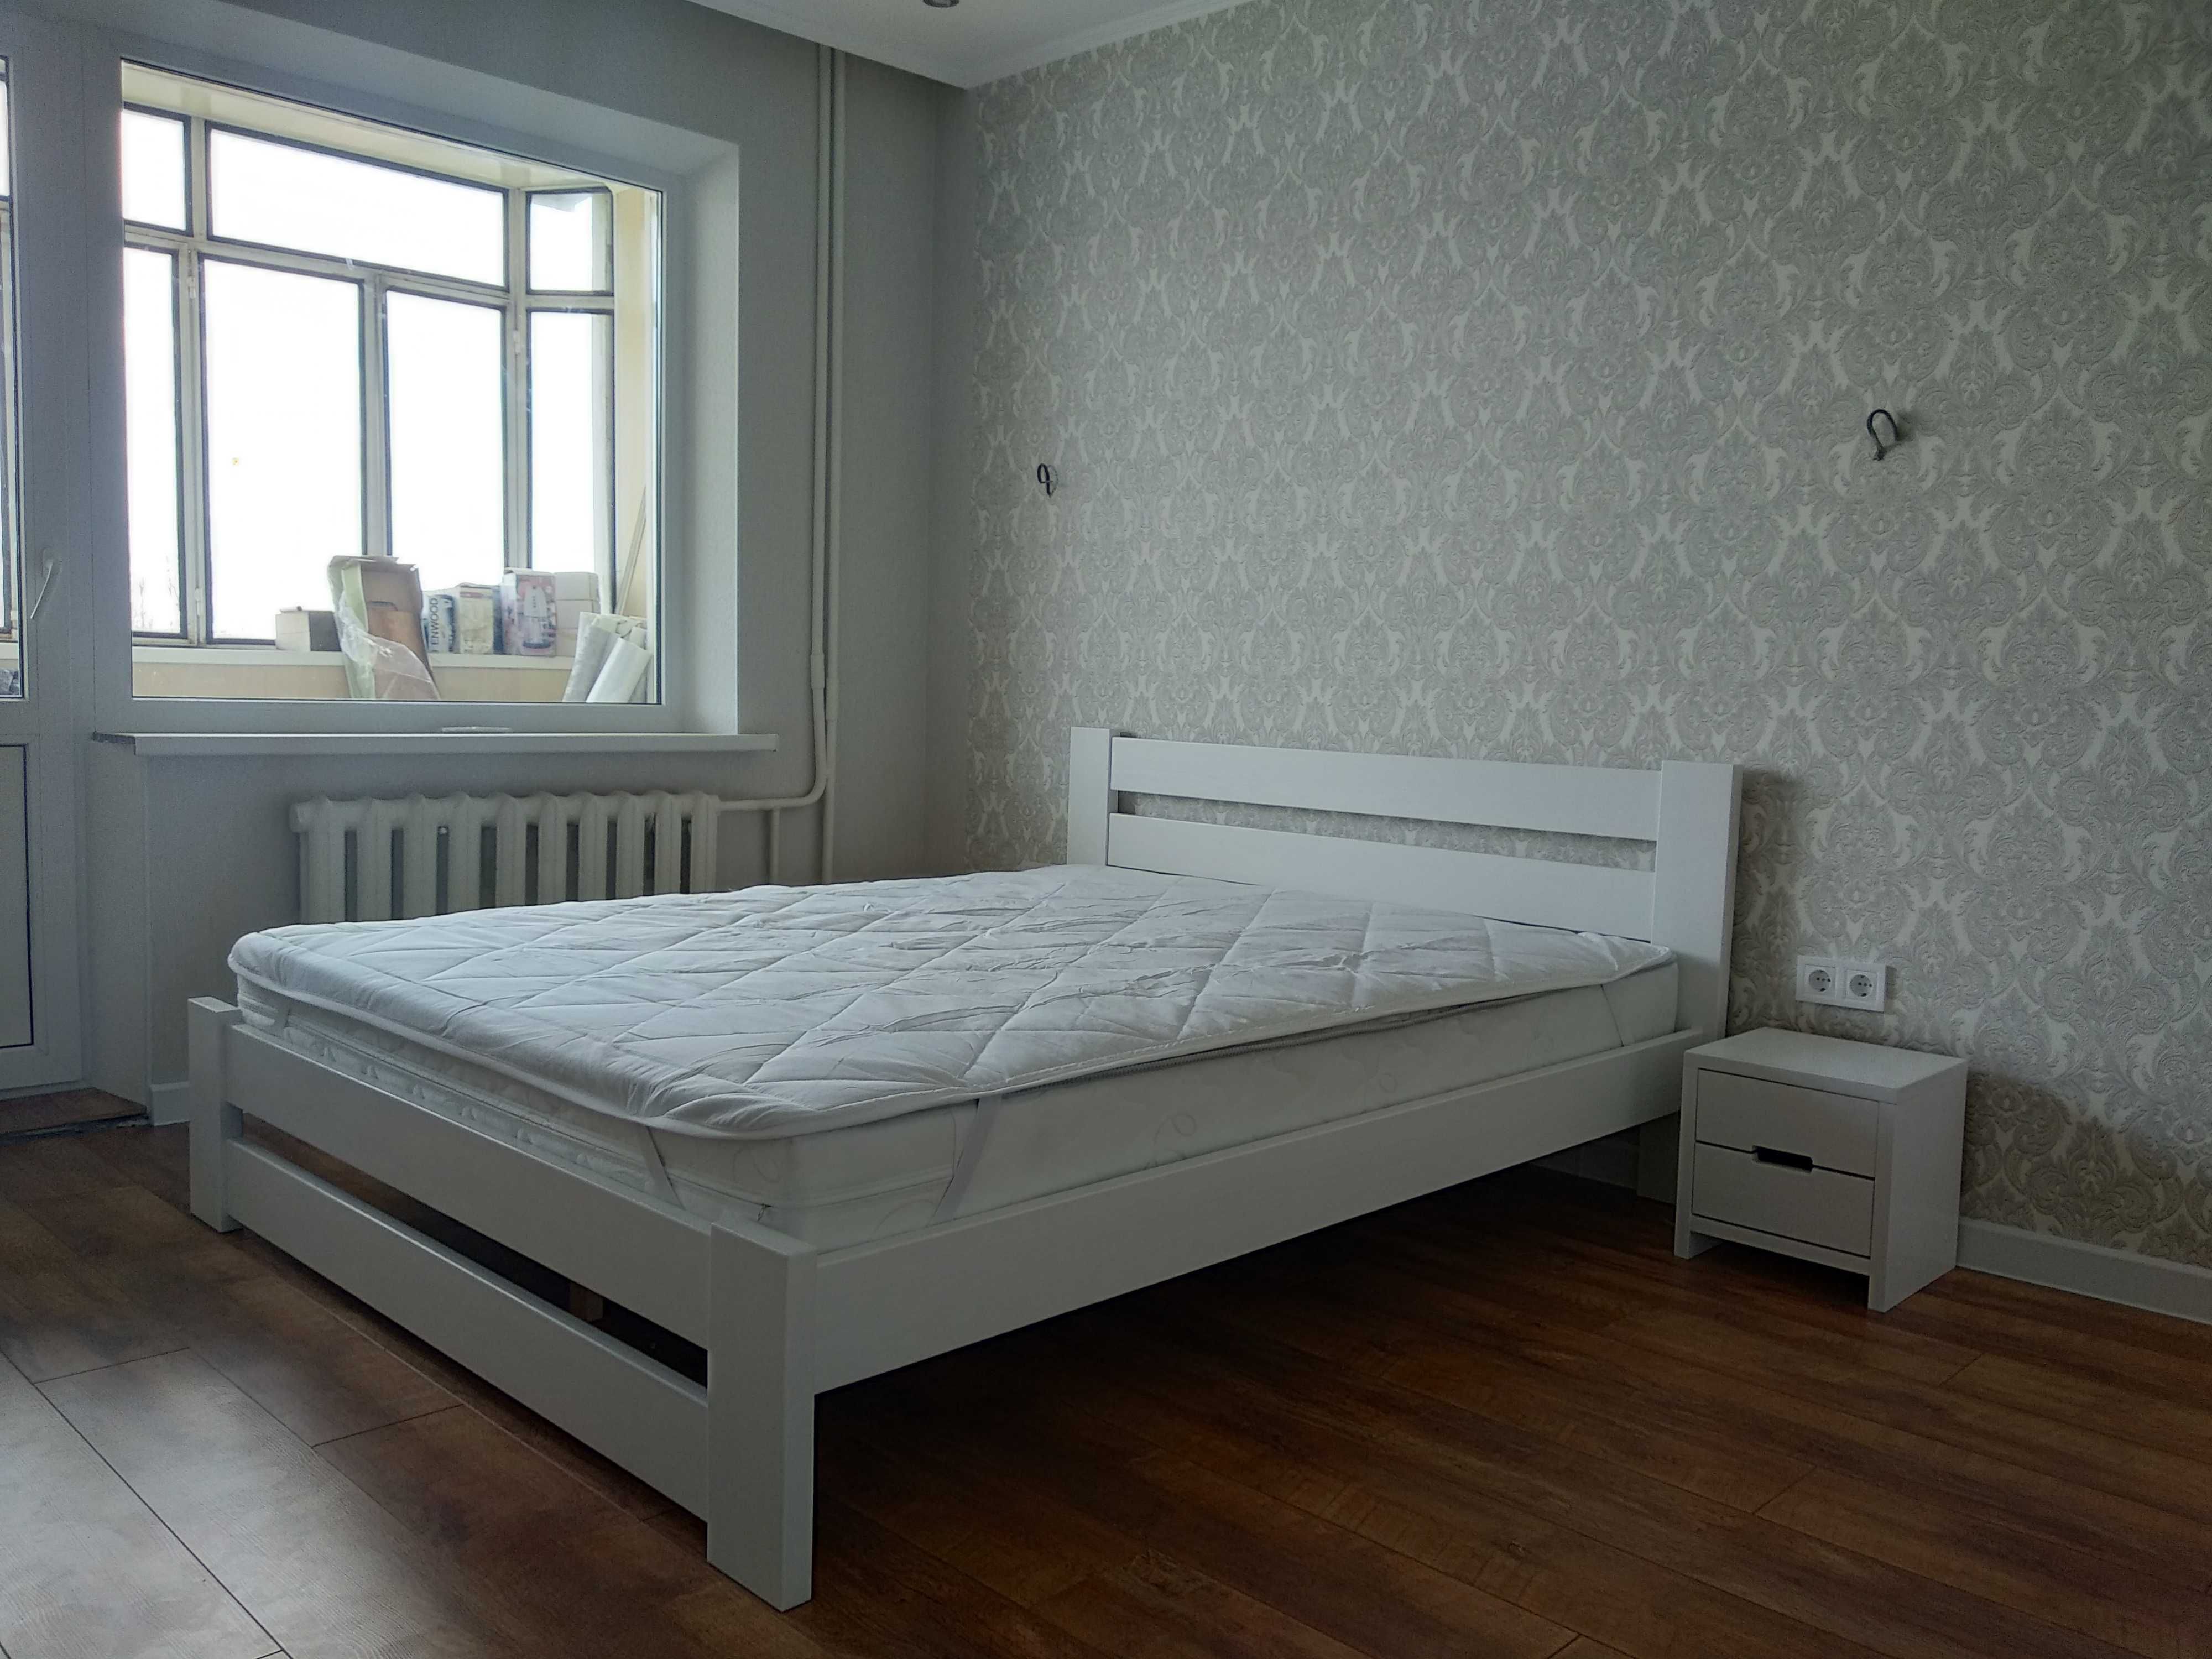 Ліжко Адель двоспальне 160*200 дерев'яне /Кровать дерев'янная